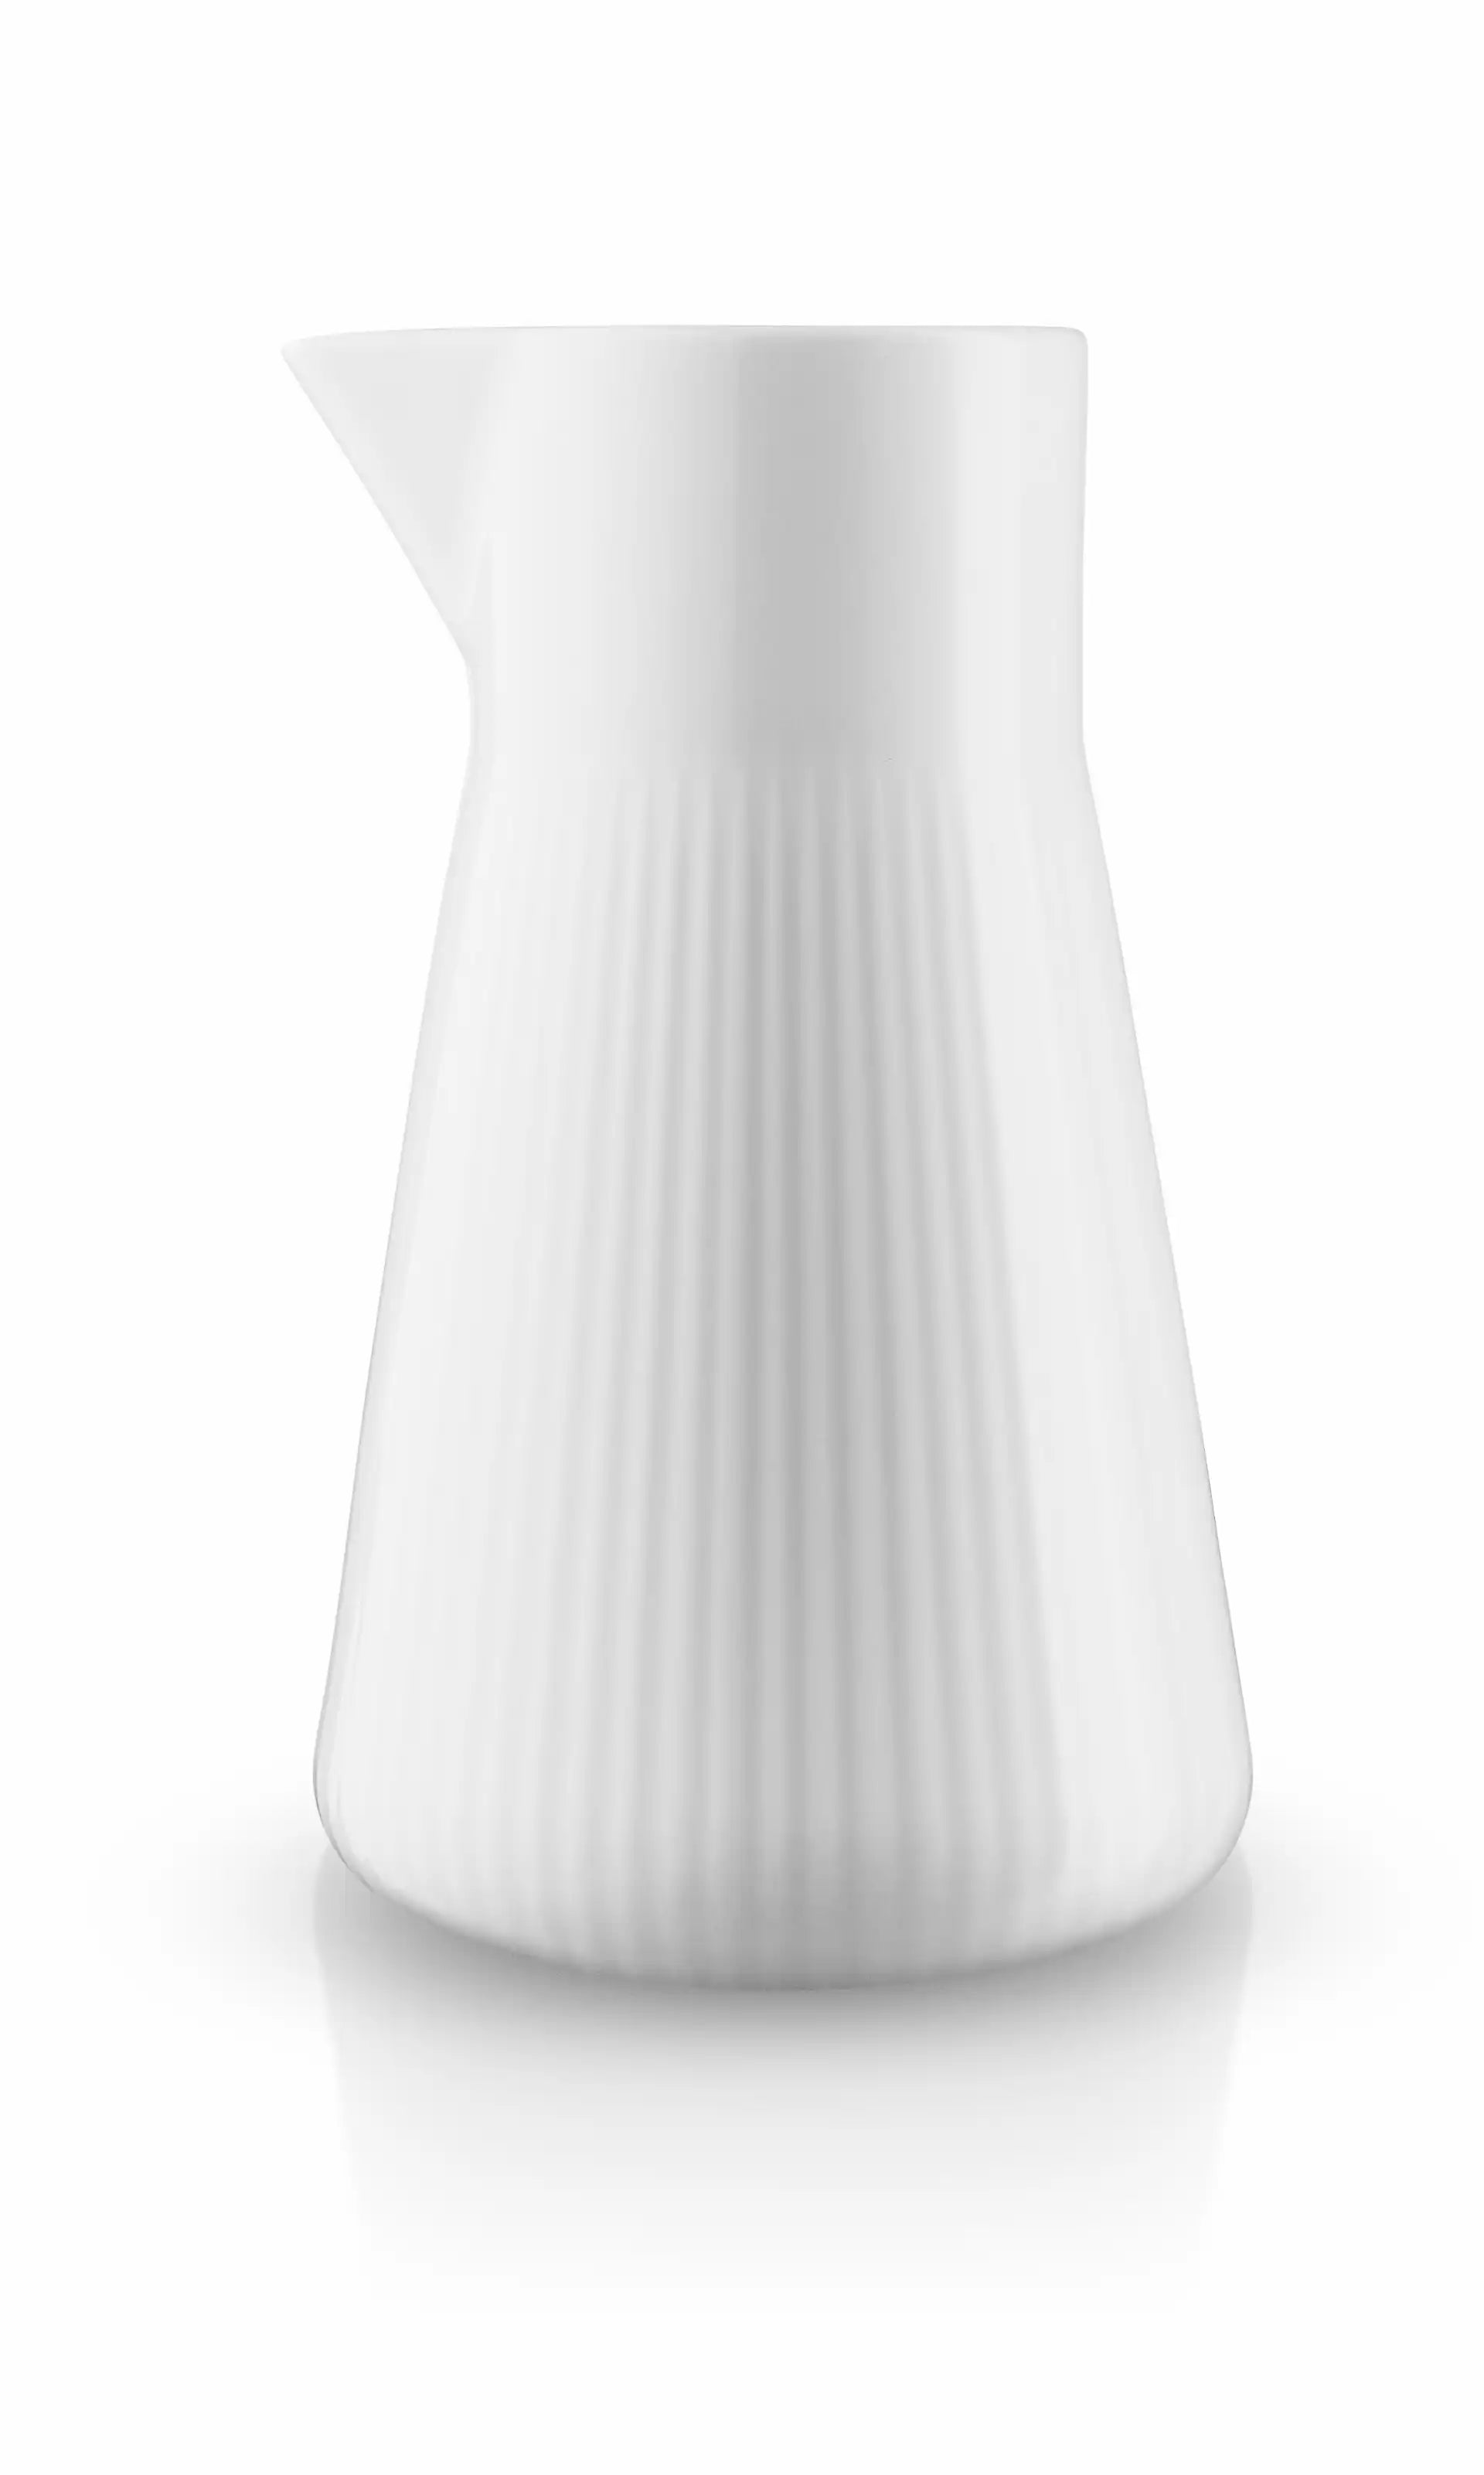 Eva Trio Legio White Porcelain Serving Jug 1.0l